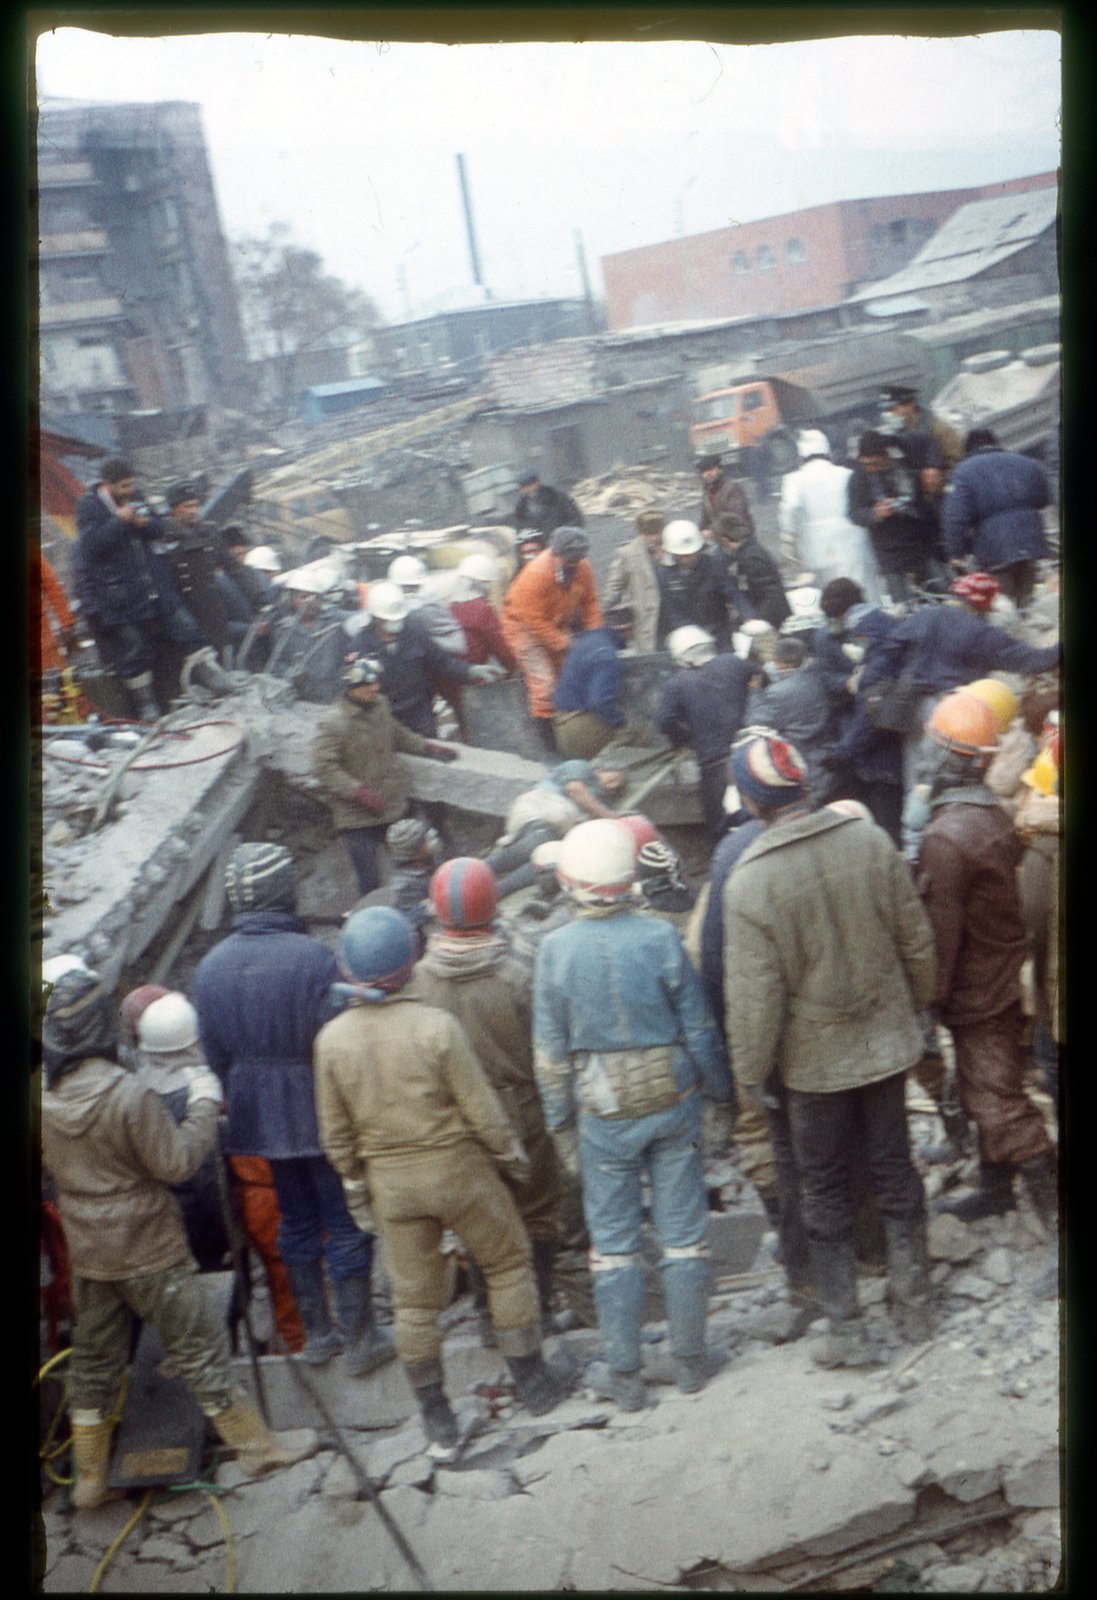 землетрясение в армении 1988 года